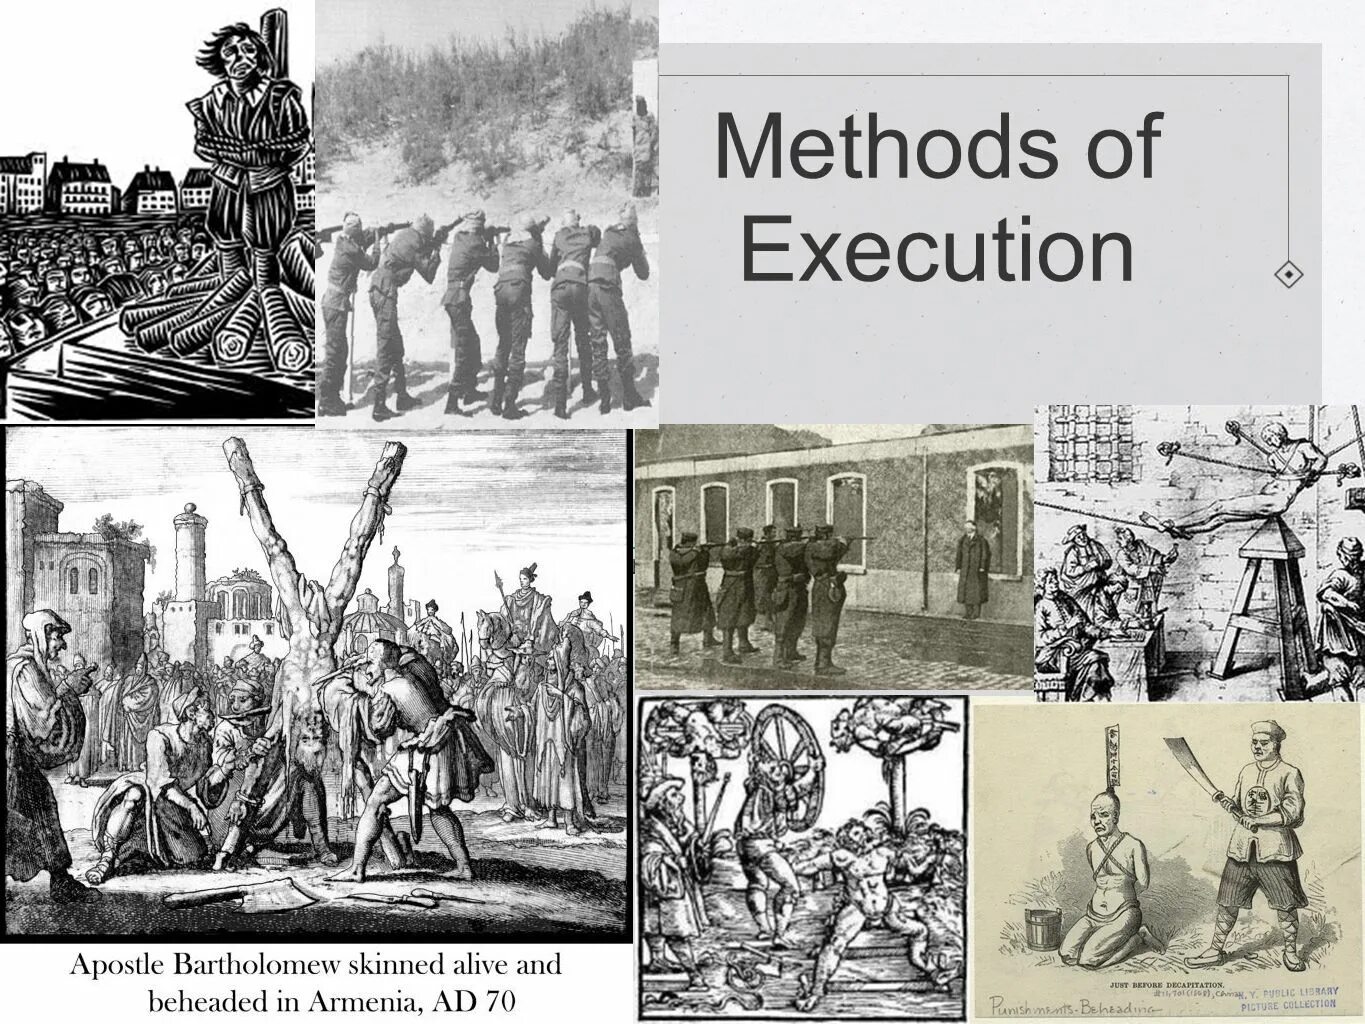 Execute метод. Смертная казнь сварение в кипятке. Execute method